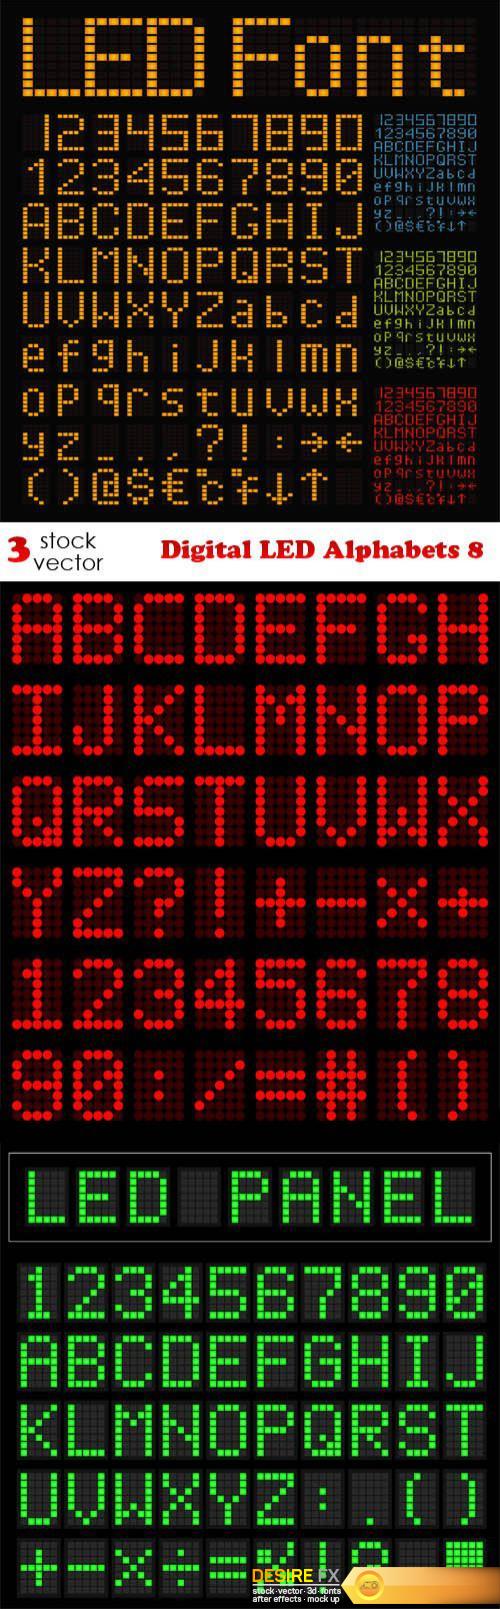 Vectors - Digital LED Alphabets 8